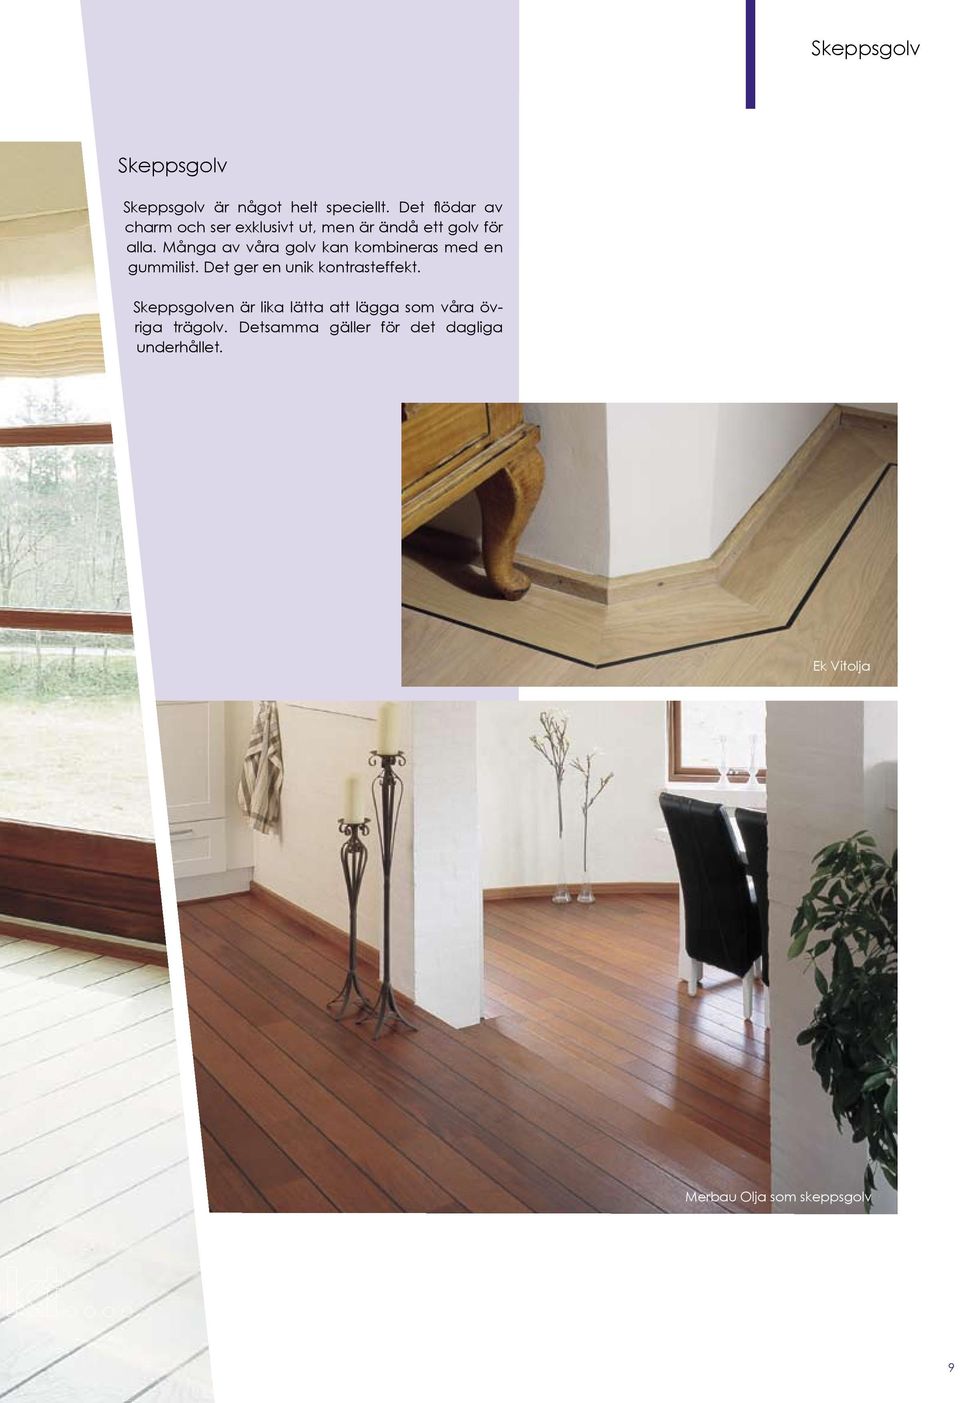 Många av våra golv kan kombineras med en gummilist. Det ger en unik kontrasteffekt.